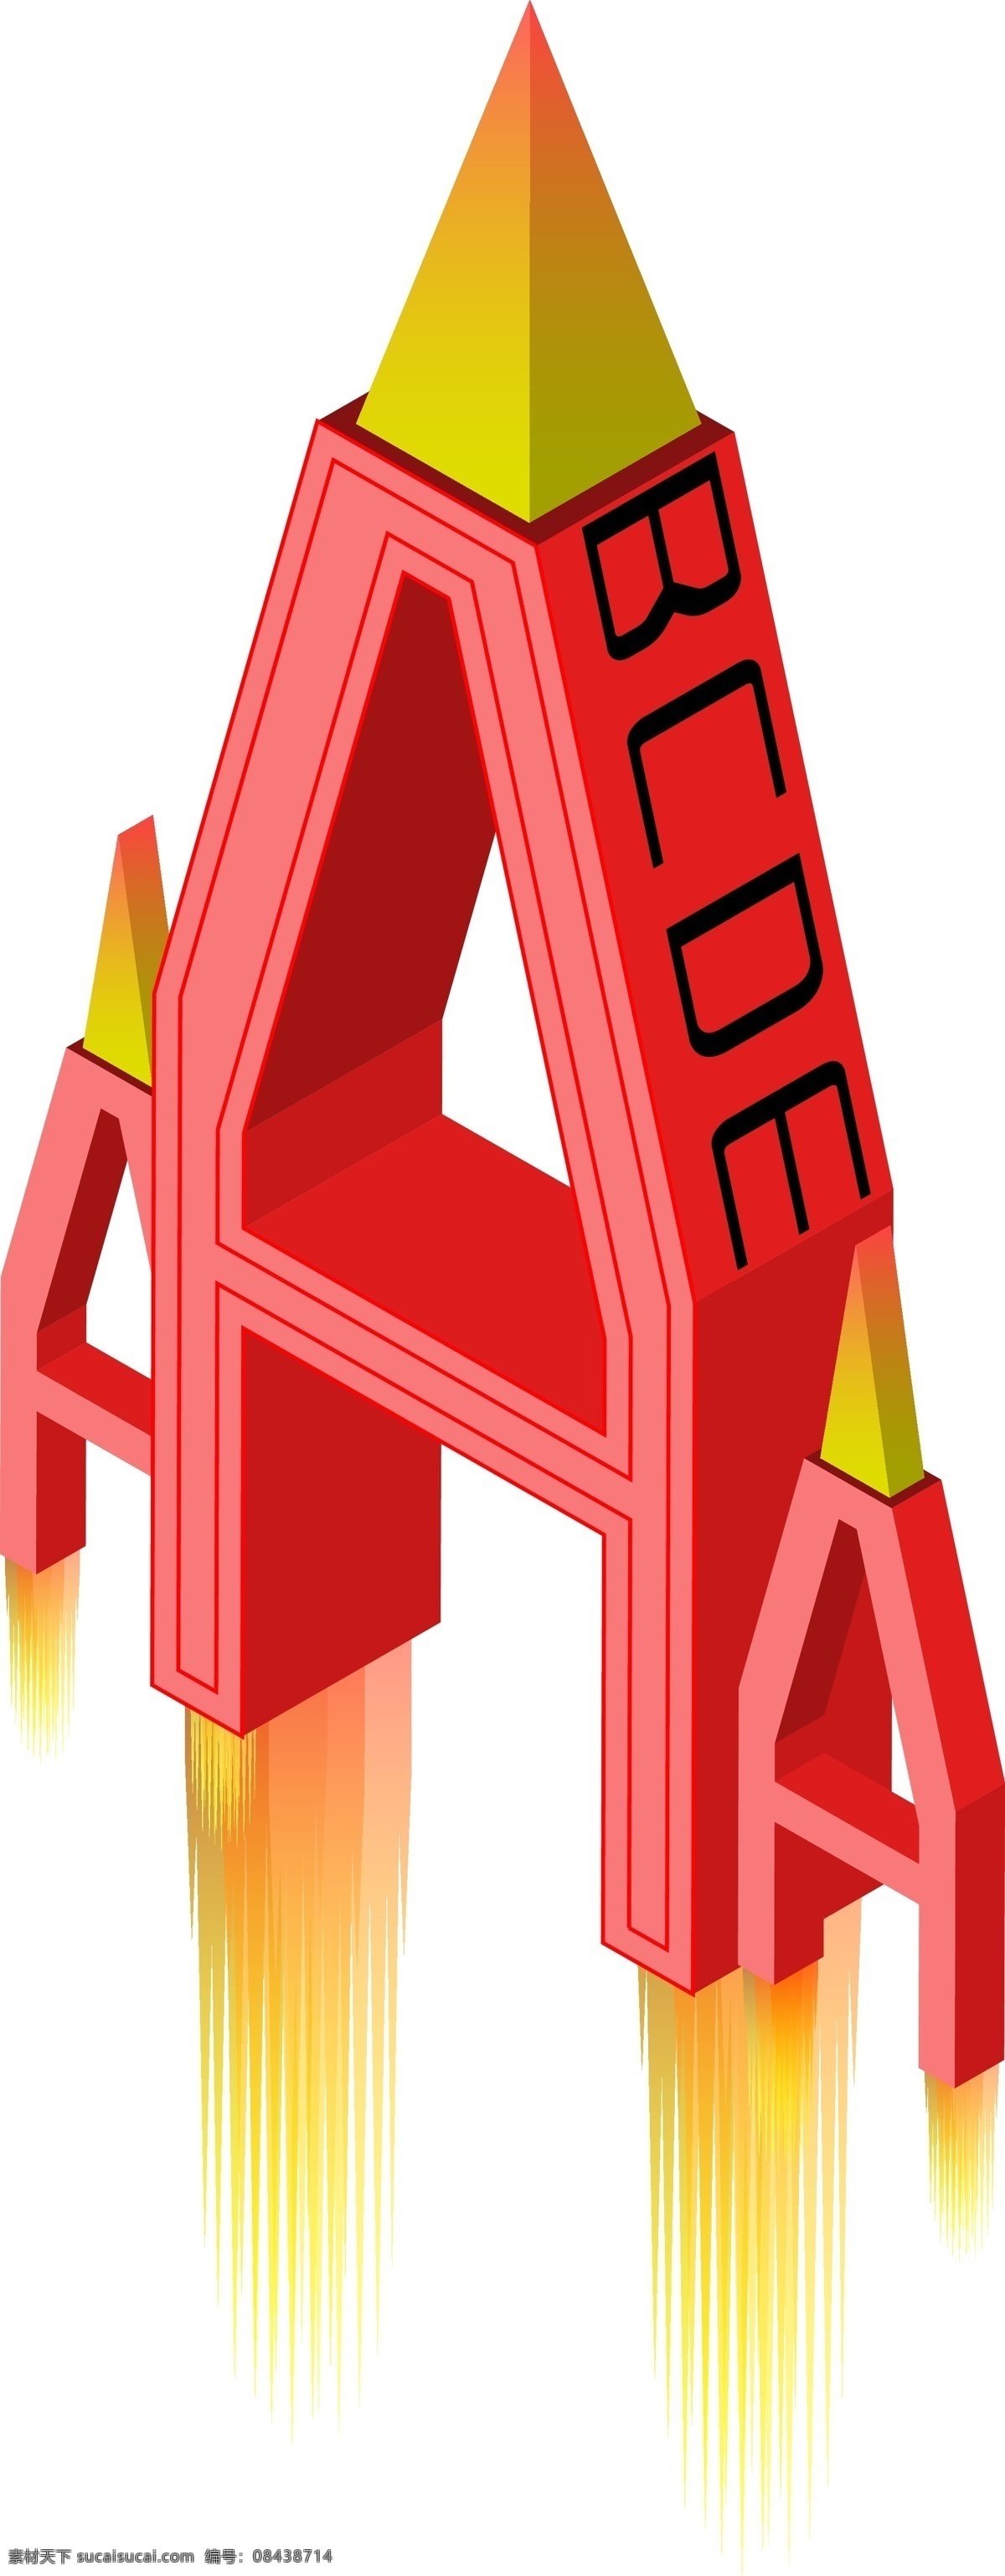 d 字母 a 矢量 免 扣 矢量png 2.5d 大写 英文 抽象艺术 立体 免抠 概念火箭 创意设计 升空